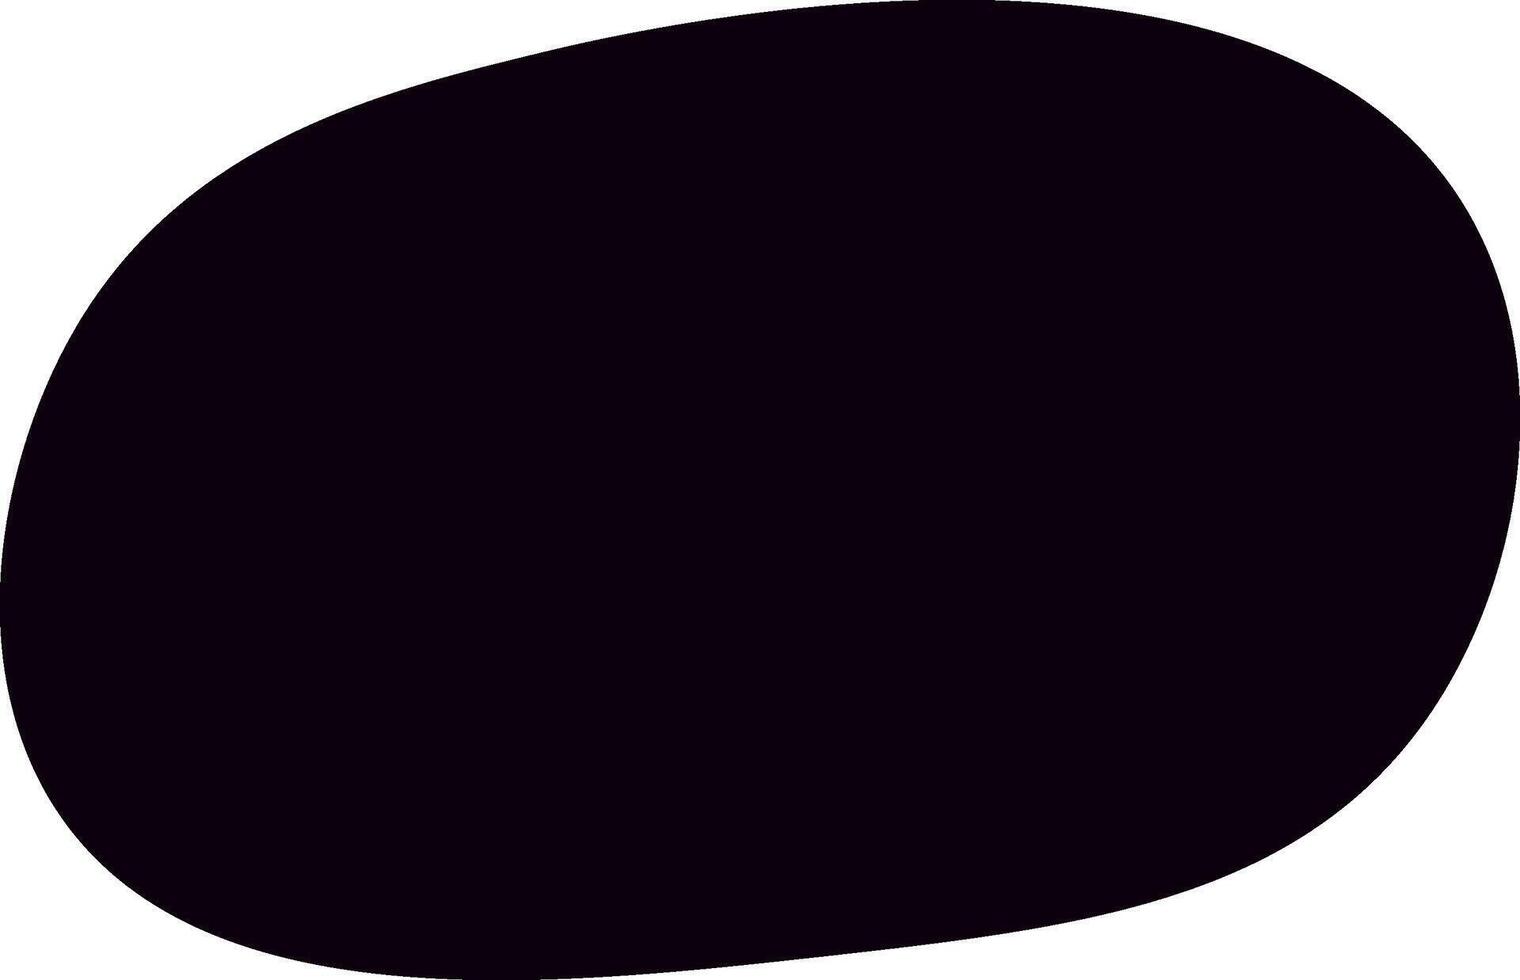 zwart willekeurig biologisch klodder vorm geven aan. modern vector biologisch willekeurig vormen, minimalistisch zwart vloeistof silhouet, gemakkelijk glad inkt vlek. vlak ontwerp elementen. vector illustratie